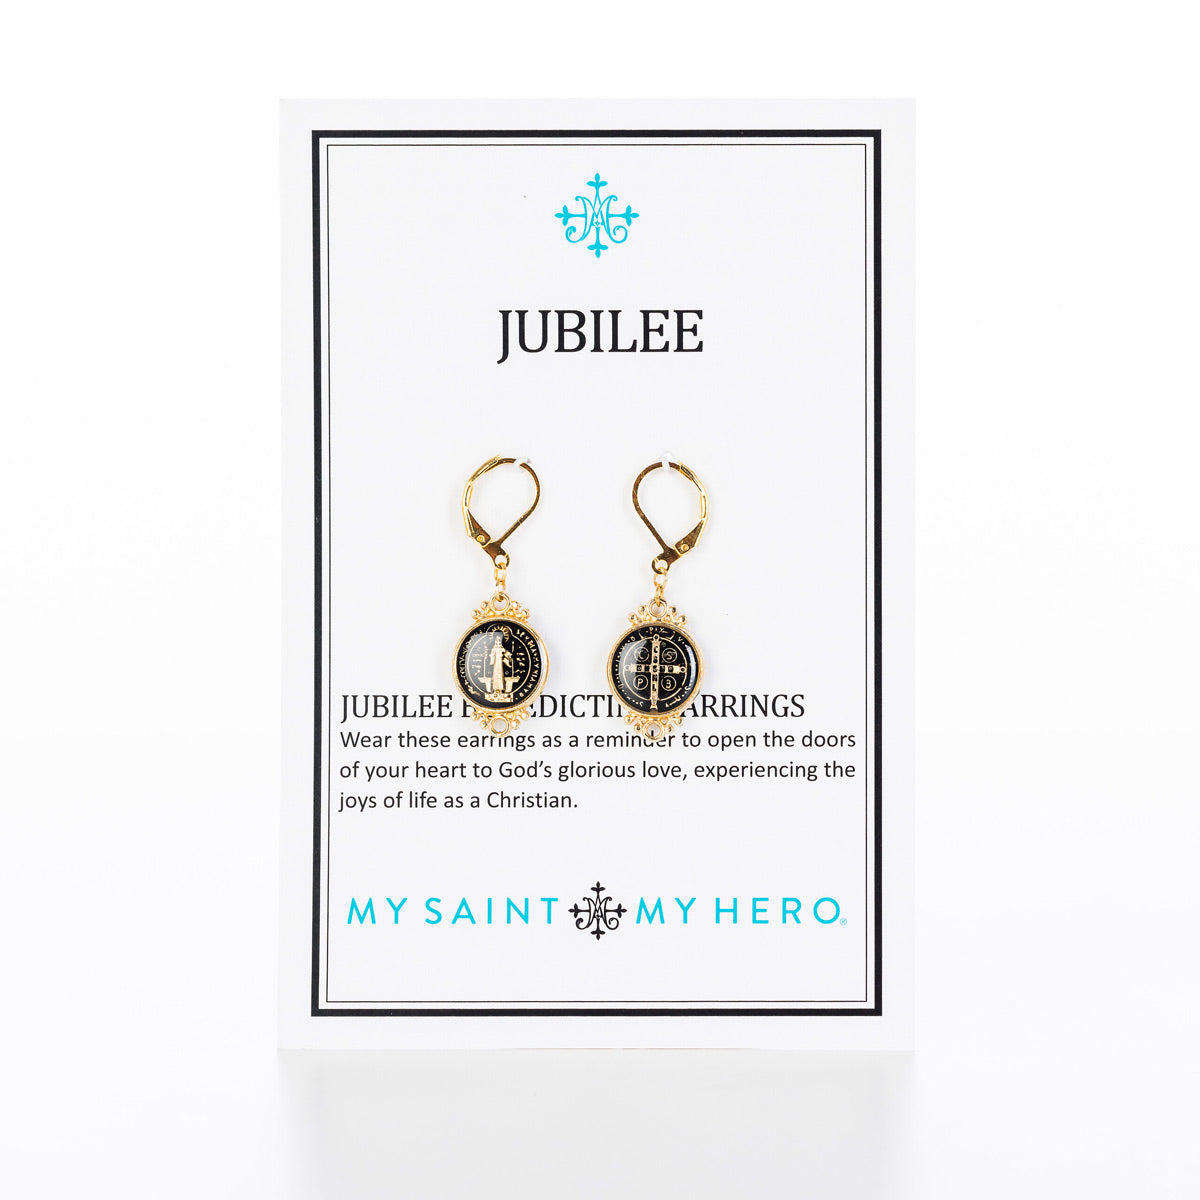 Jubilee Medal Earrings by My Saint My Hero